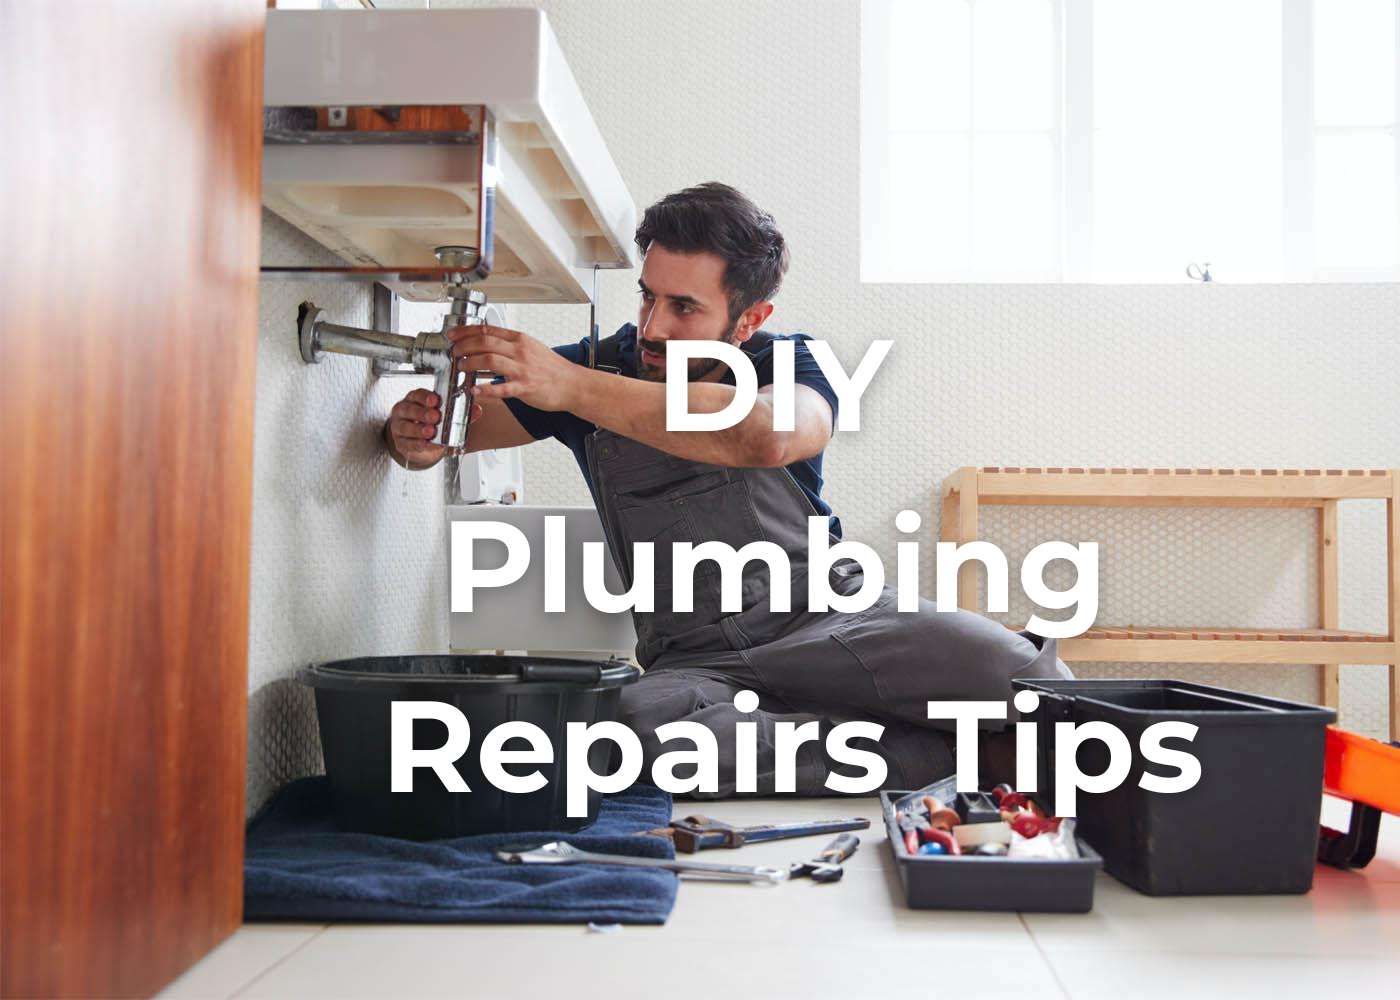 diy-plumbing-repairs-tips